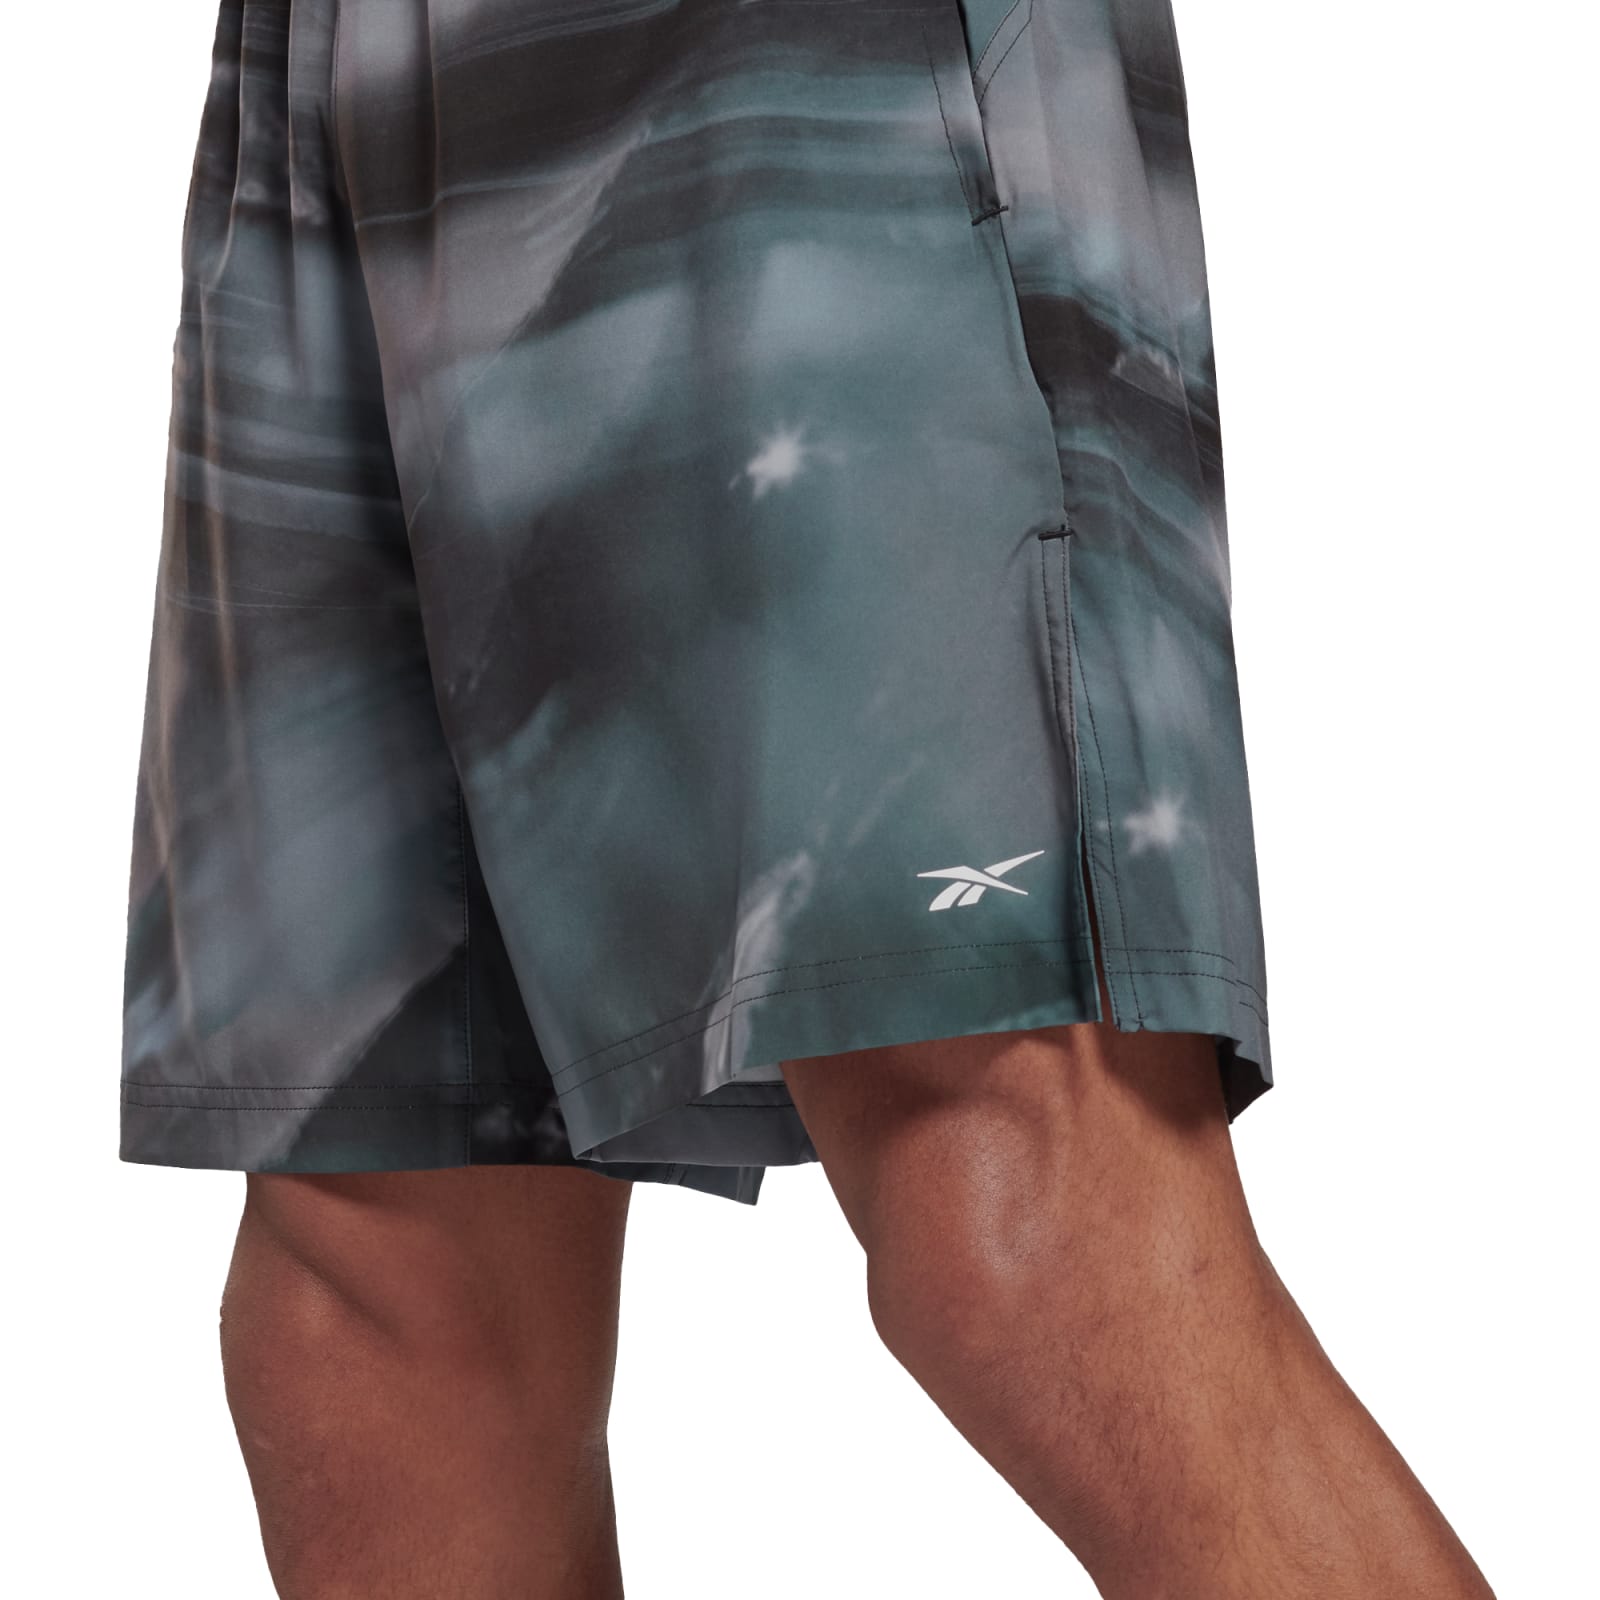 udtryk Græsse Renovering Reebok Men's Austin Shorts - Bright Cobalt | Rogue Fitness